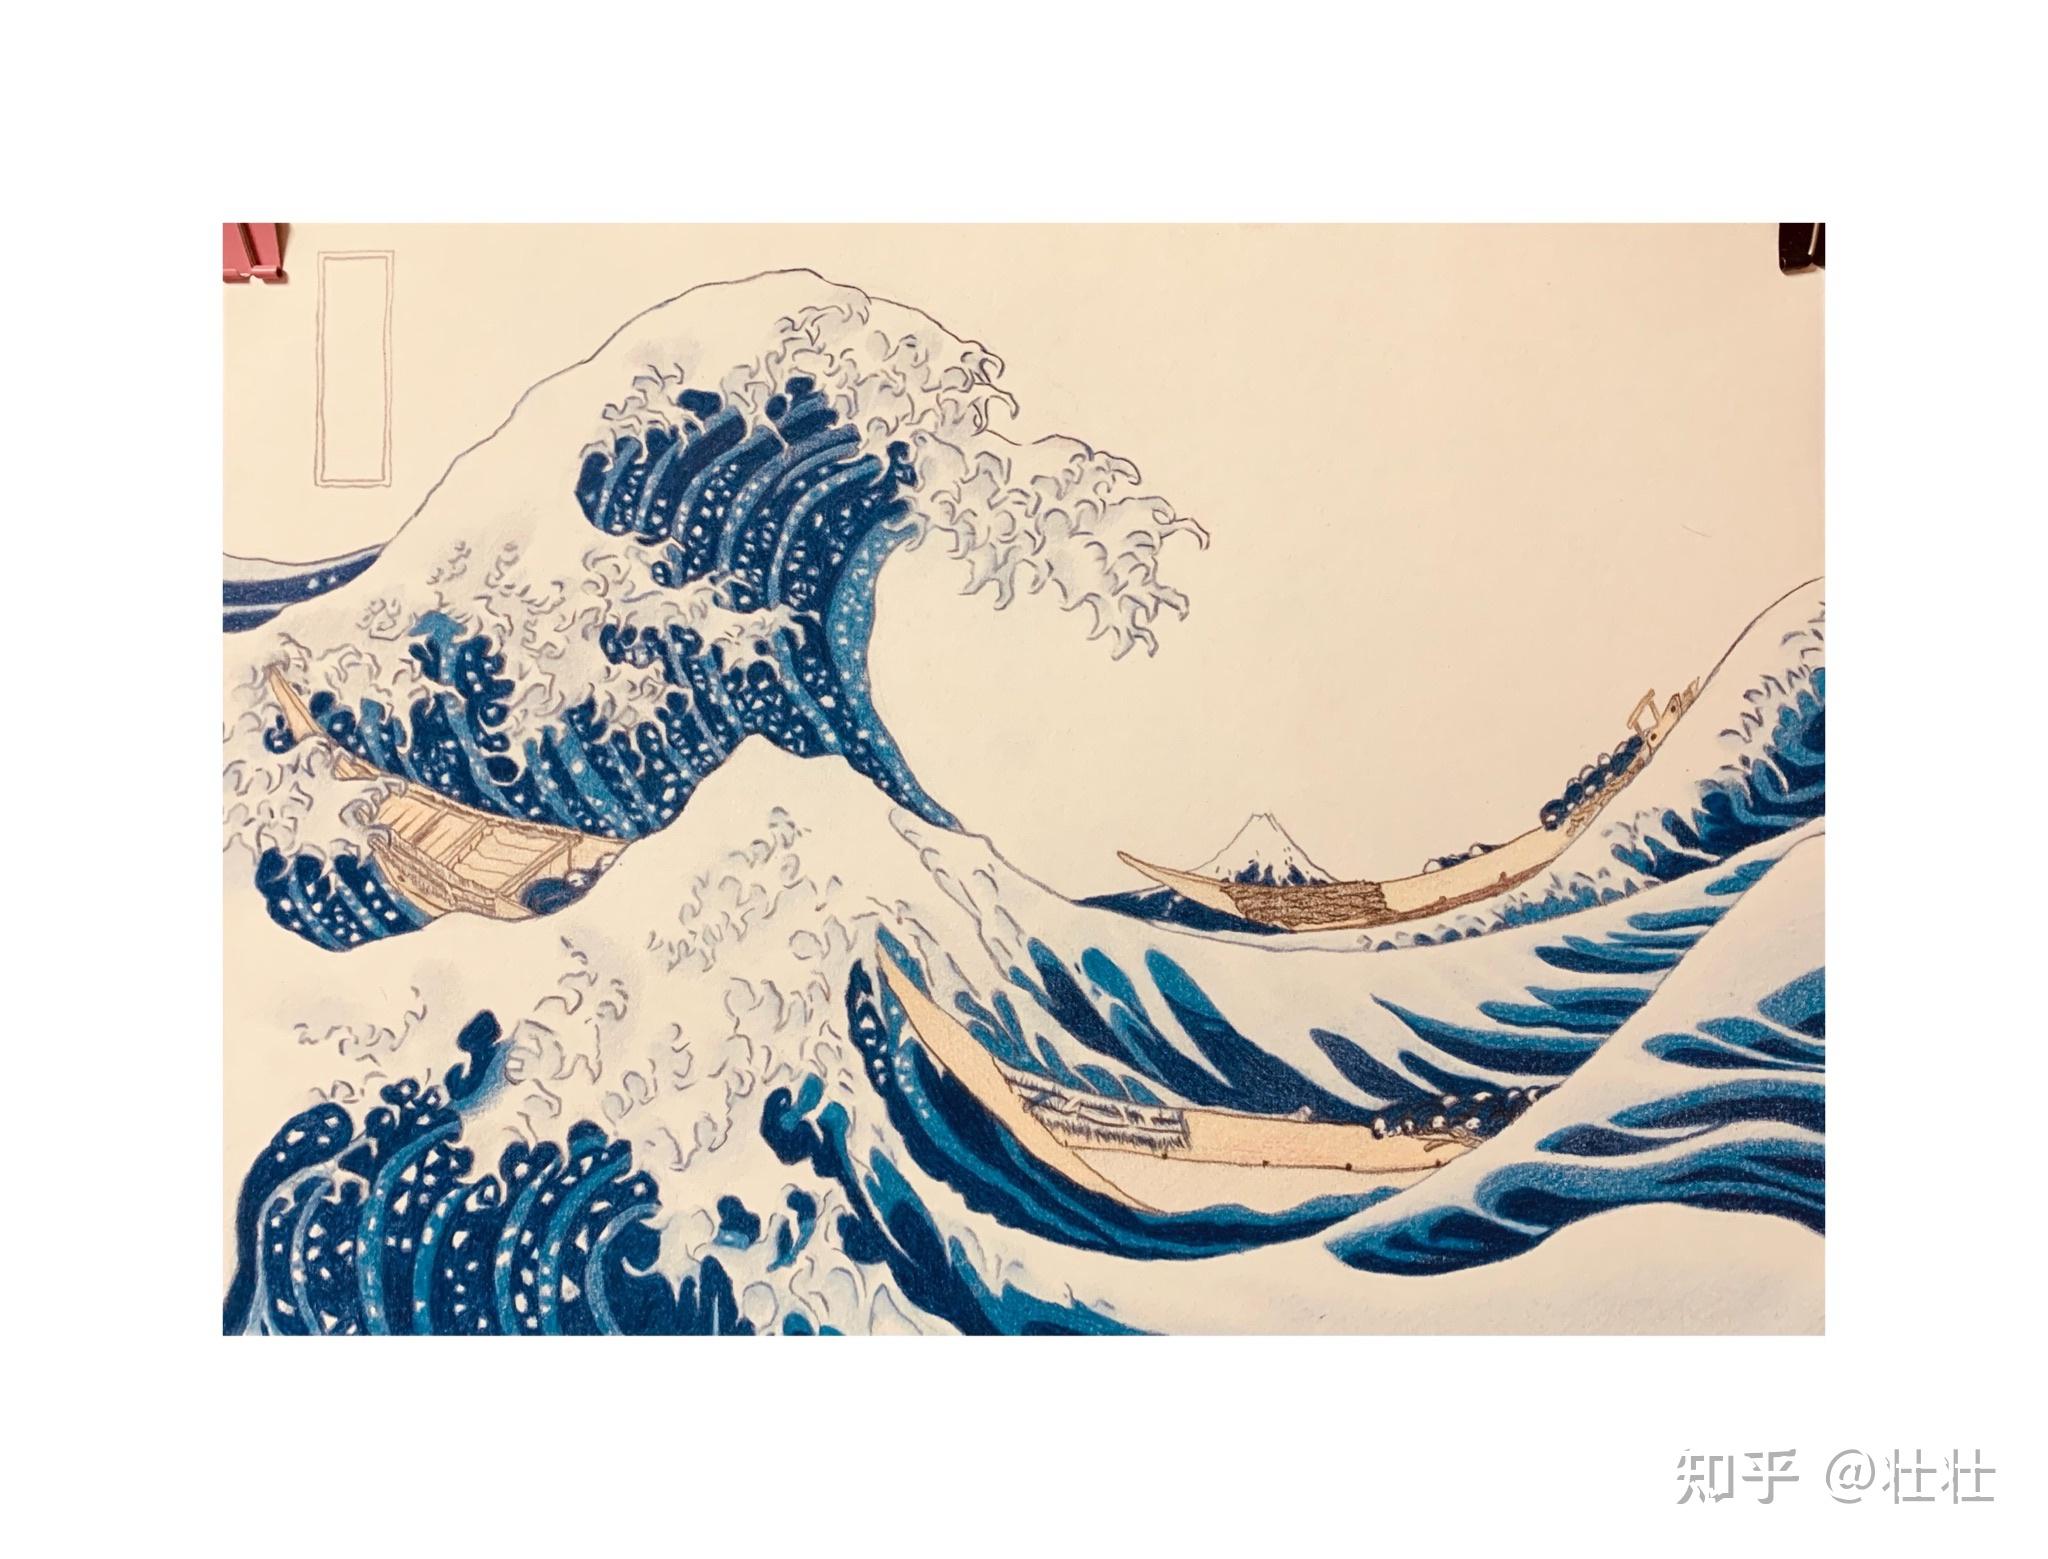 神奈川冲浪里彩铅临摹作浮世绘系列